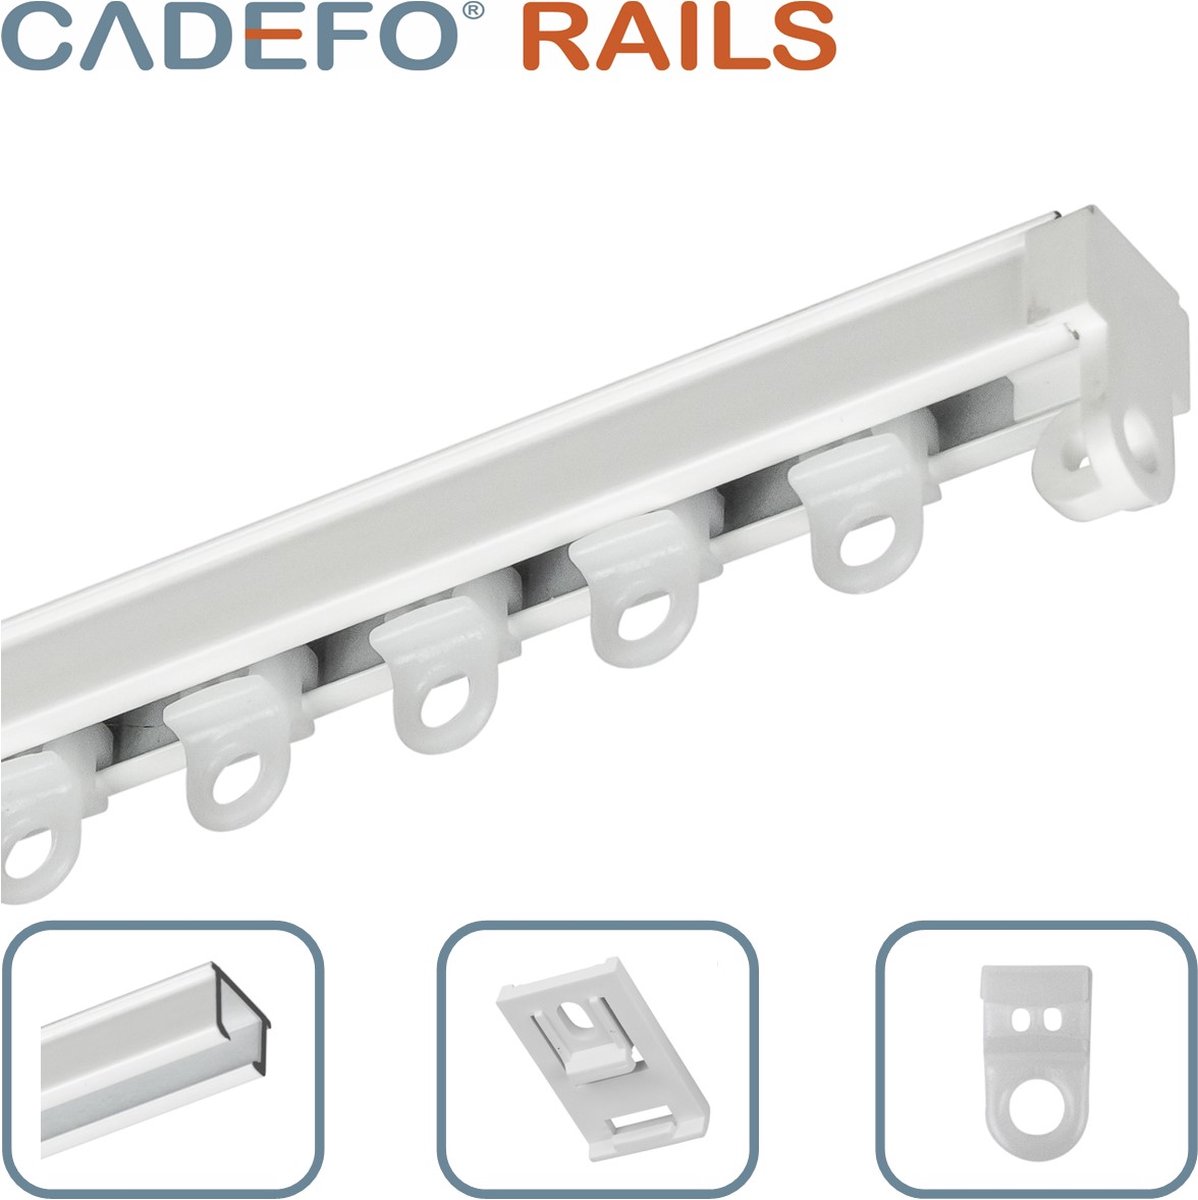 CADEFO RAILS (151 - 200 cm) Gordijnrails - Compleet op maat! - UIT 1 STUK - Leverbaar tot 6 meter - Plafondbevestiging - Lengte 193 cm